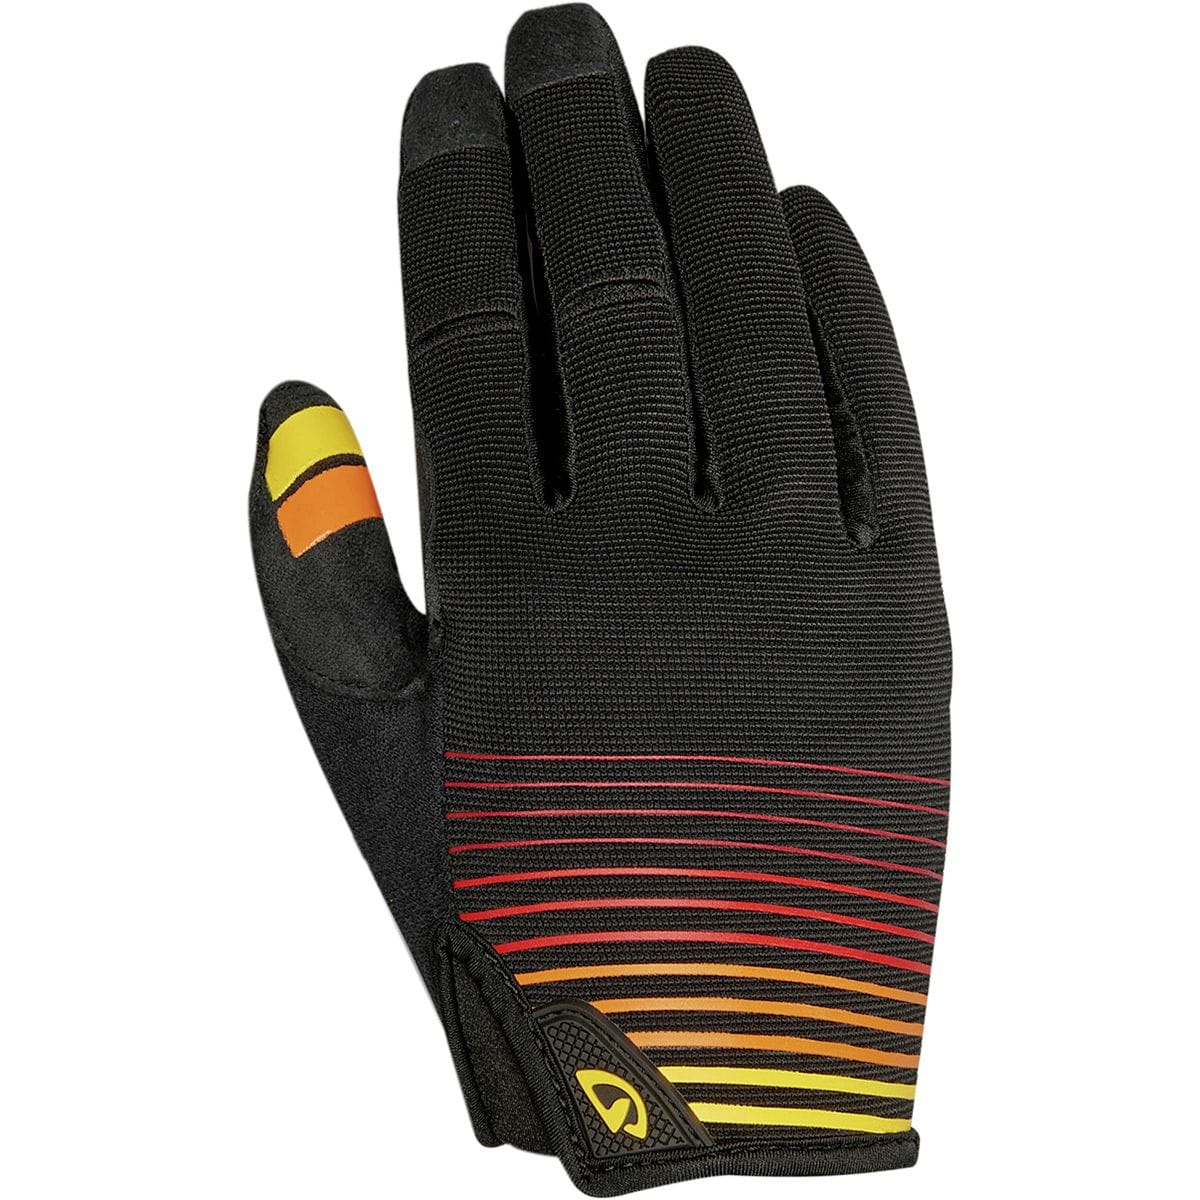 Giro DND Glove - Men's Heatwave/Black, XL